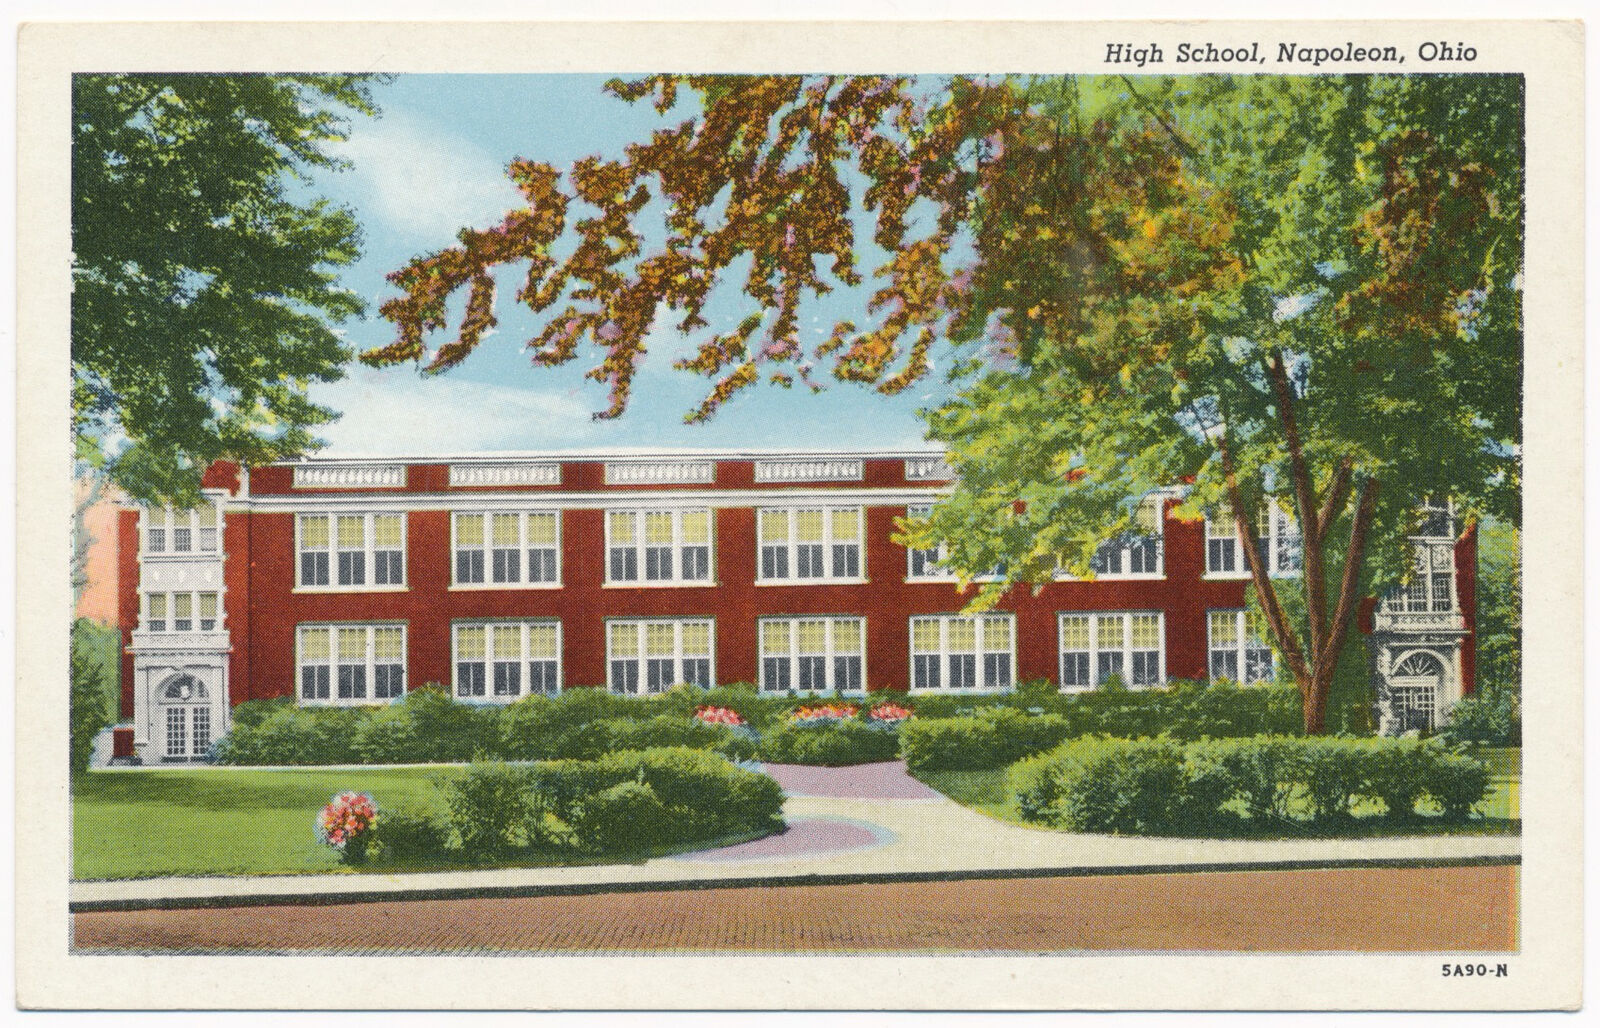 High School, Napoleon, Ohio ca.1935